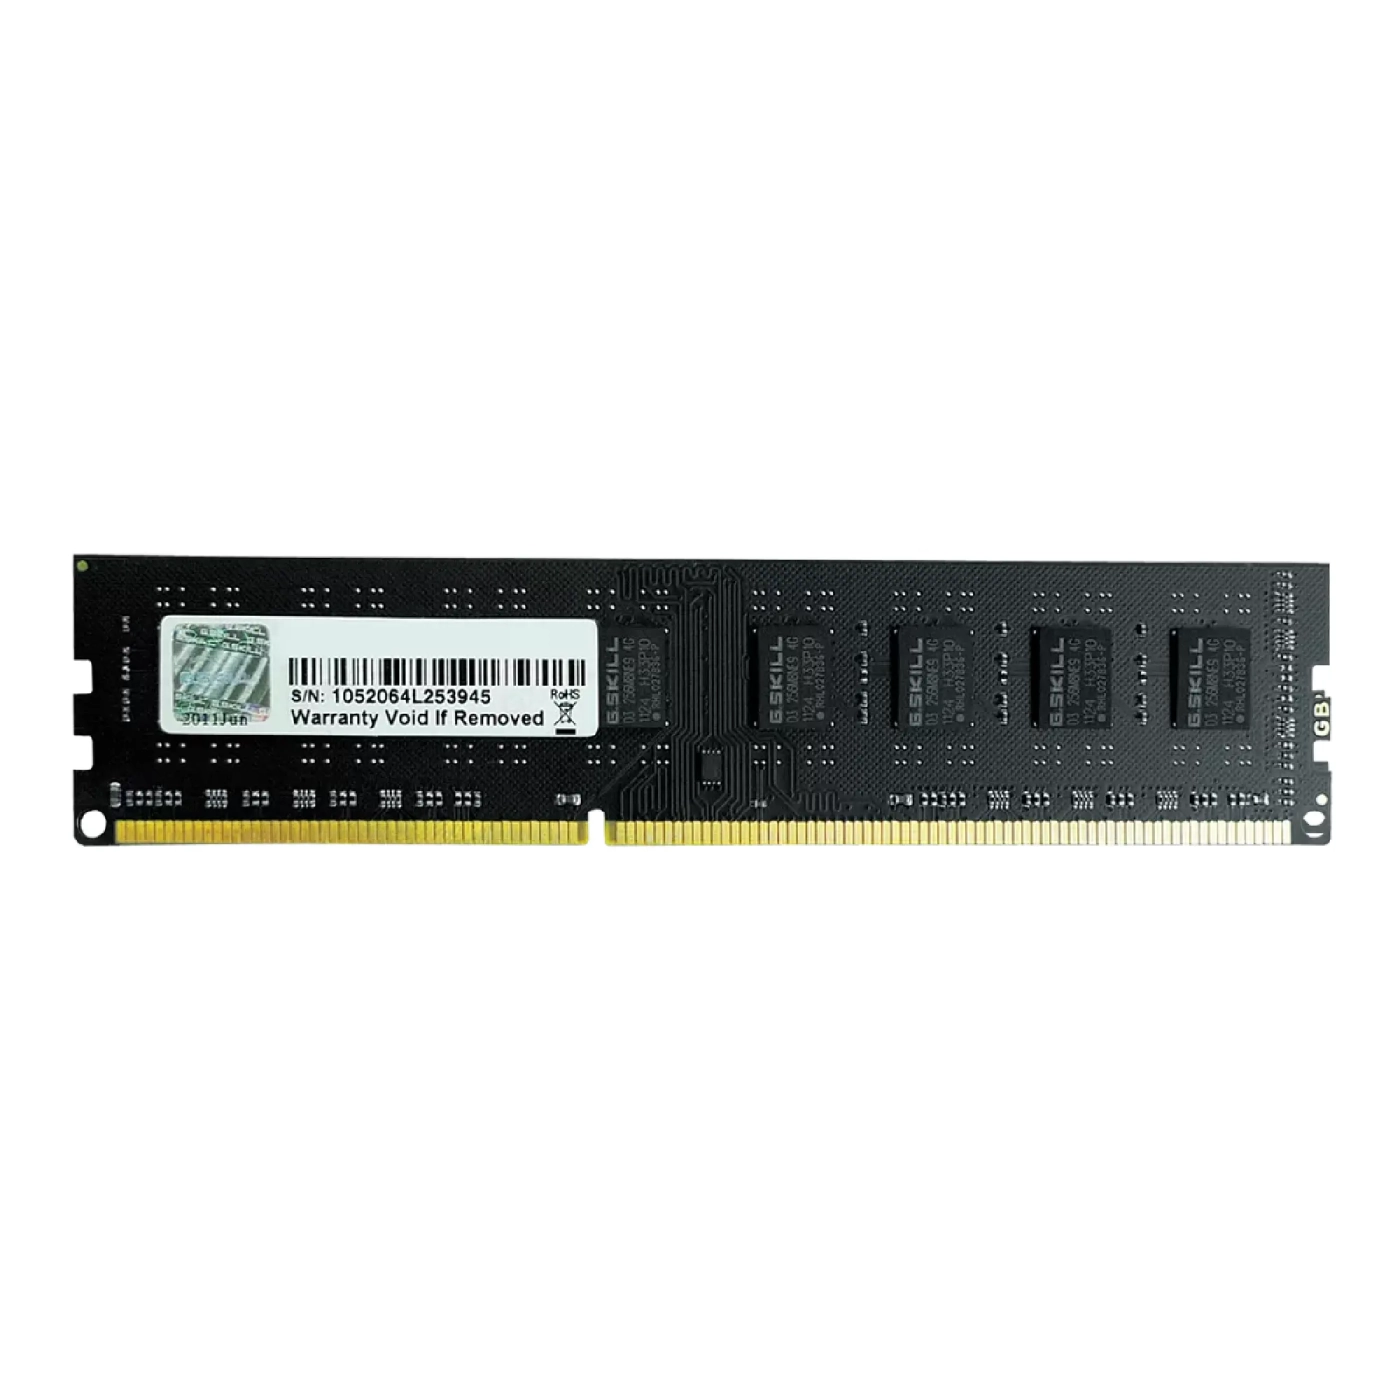 Купить Модуль памяти G.Skill Value DDR3-1600 8GB CL11-11-11 1.50V - фото 1